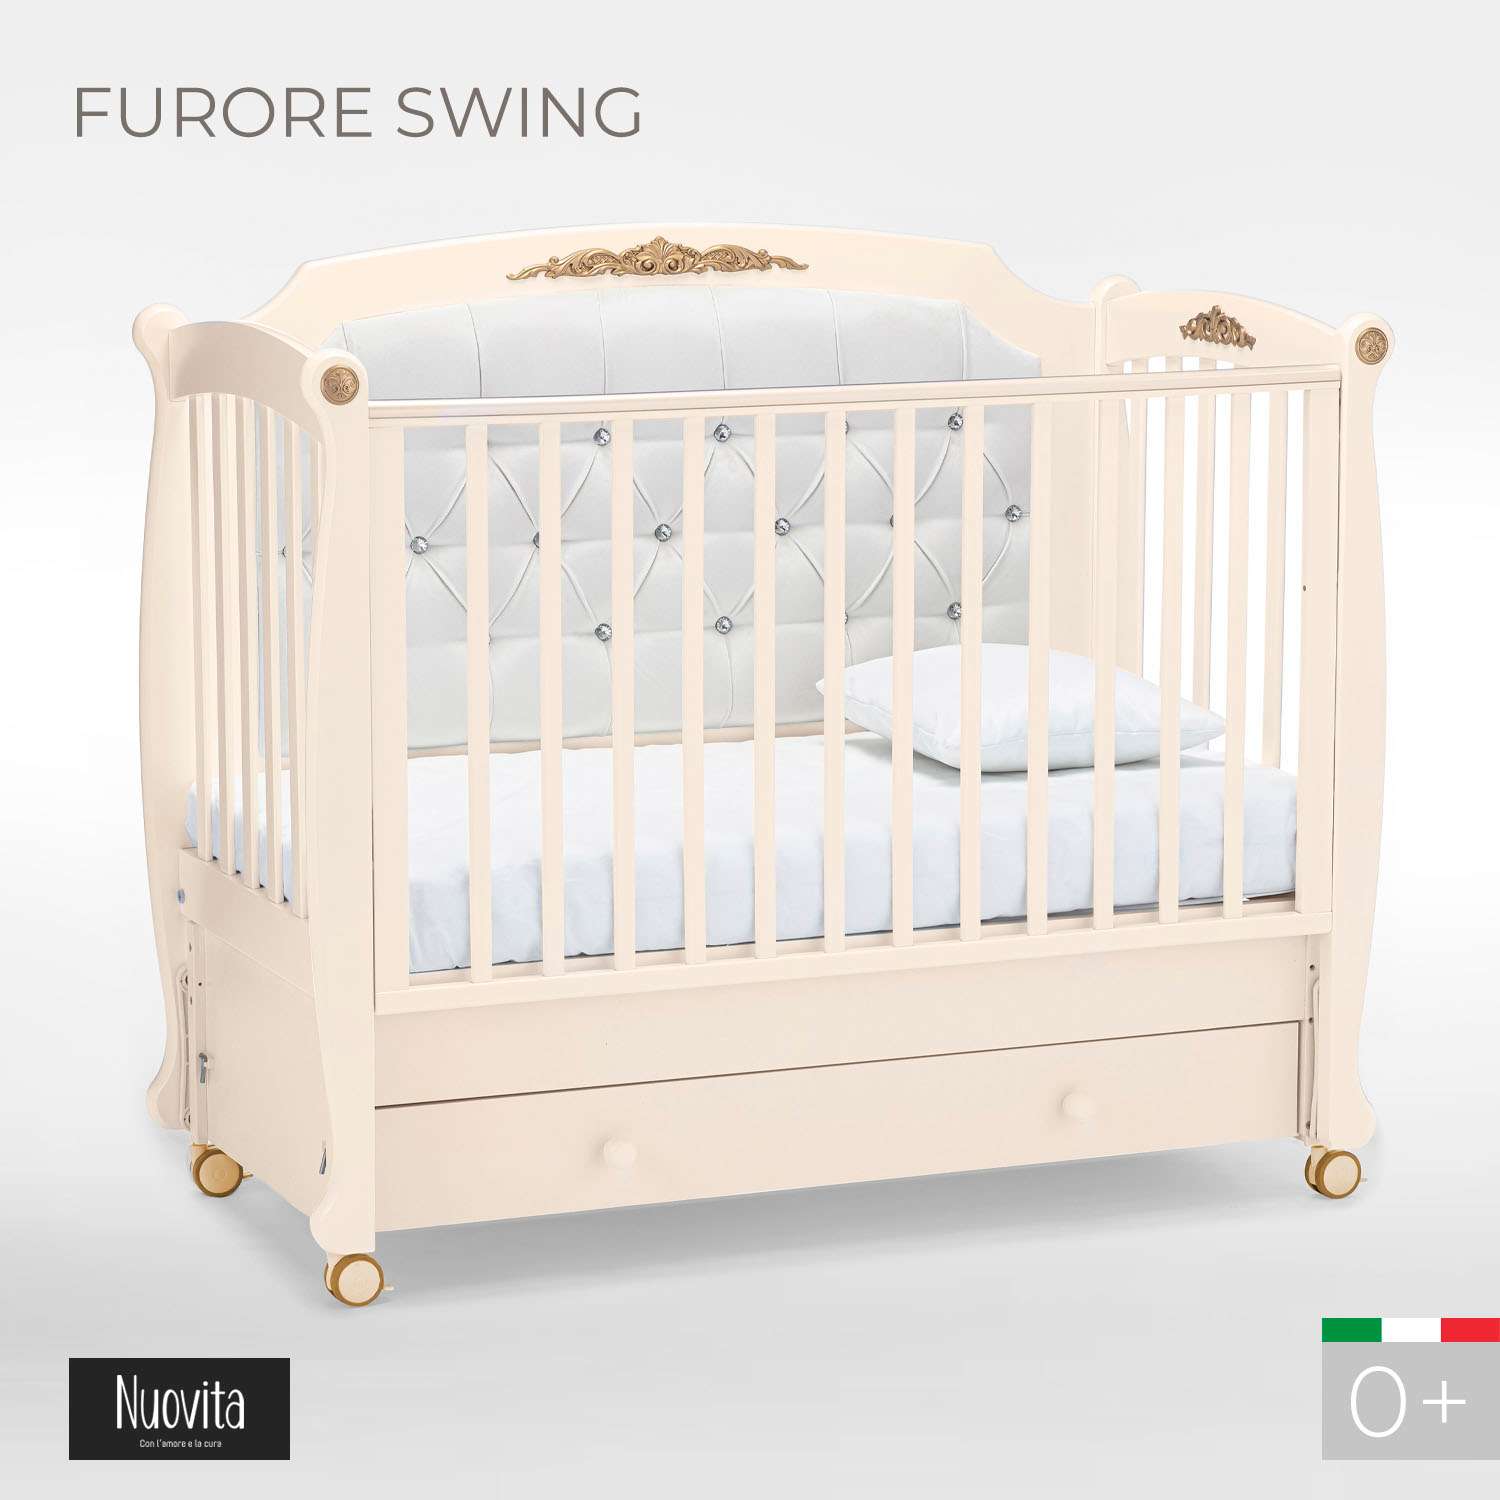 Детская кроватка Nuovita Furore Swing прямоугольная, продольный маятник (слоновая кость) - фото 2